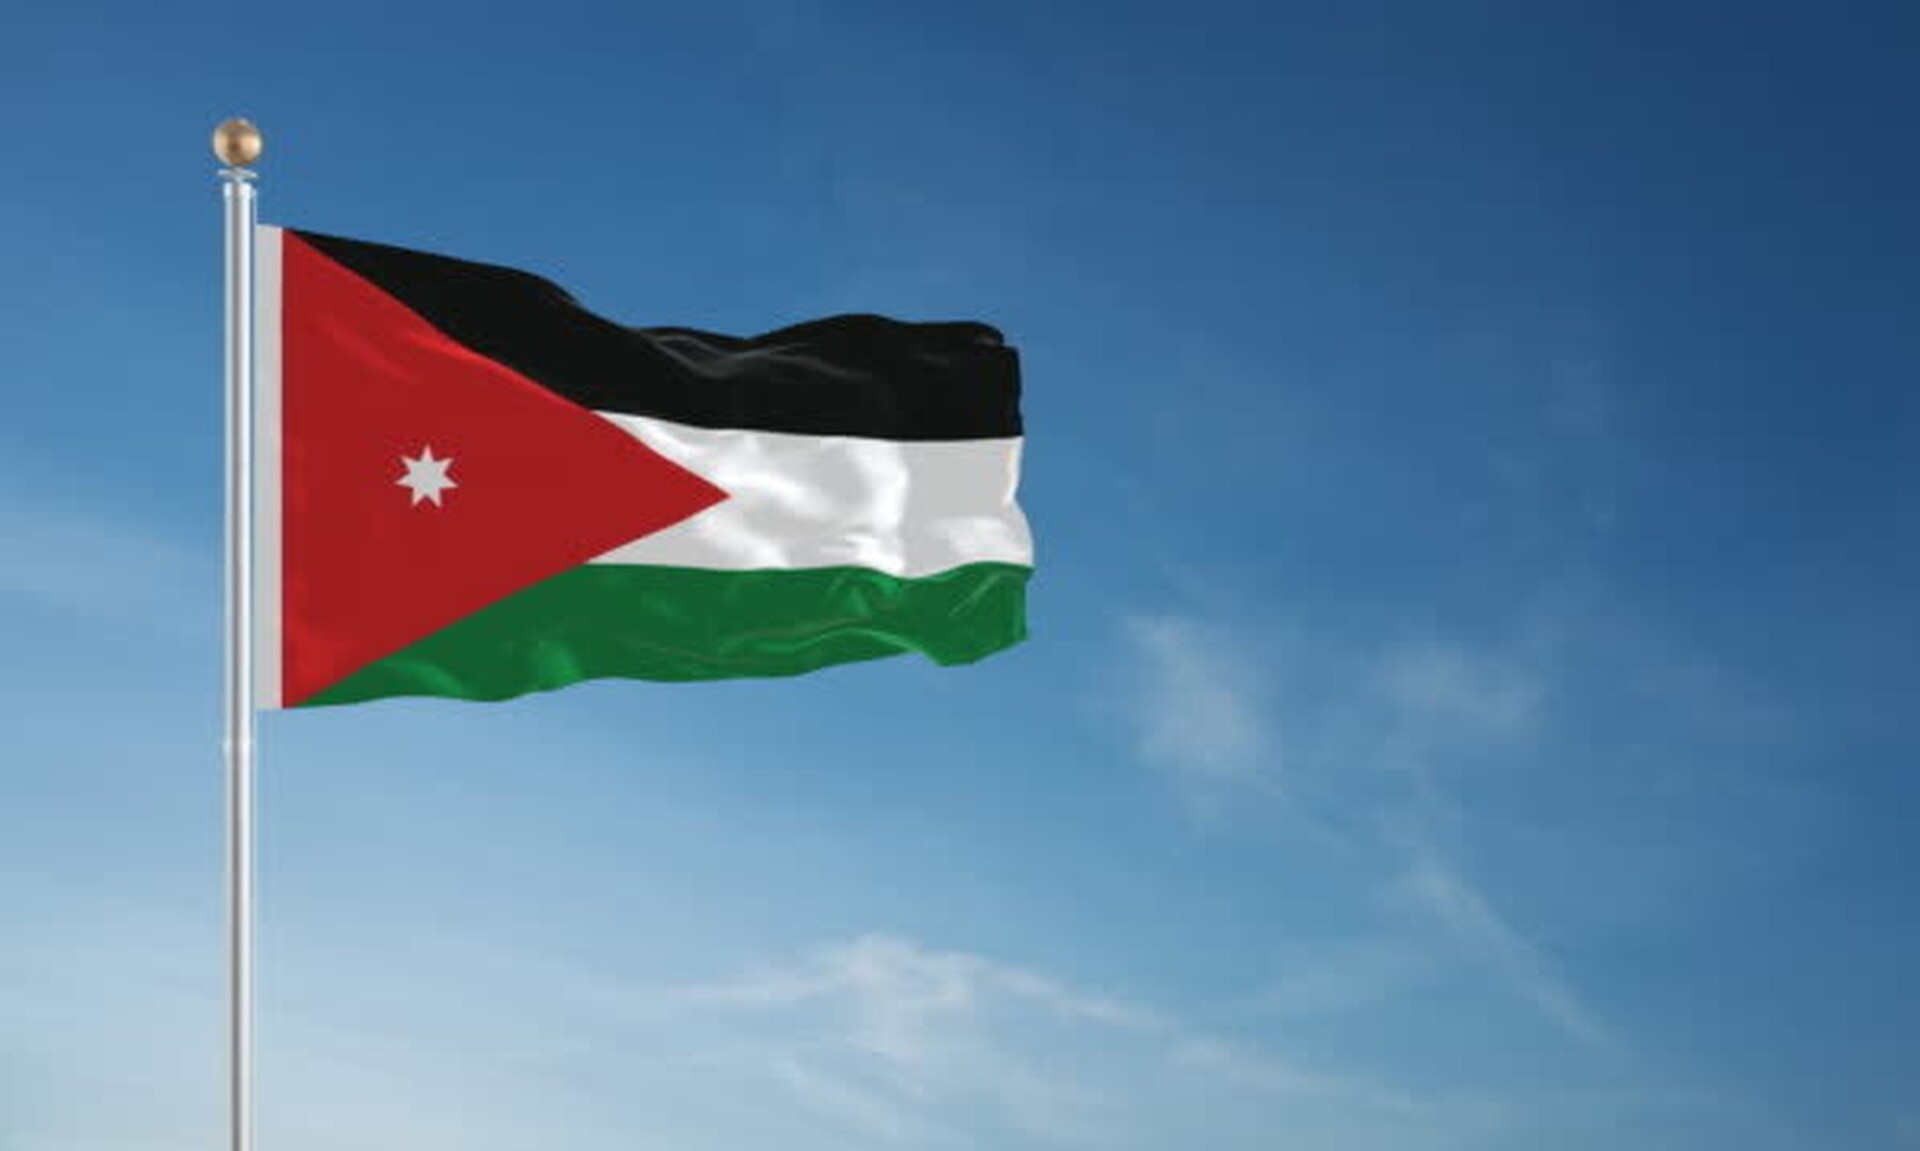 Μέση Ανατολή: Η Ιορδανία έκλεισε τον εναέριο χώρο της λόγω της «επικίνδυνης κατάστασης»